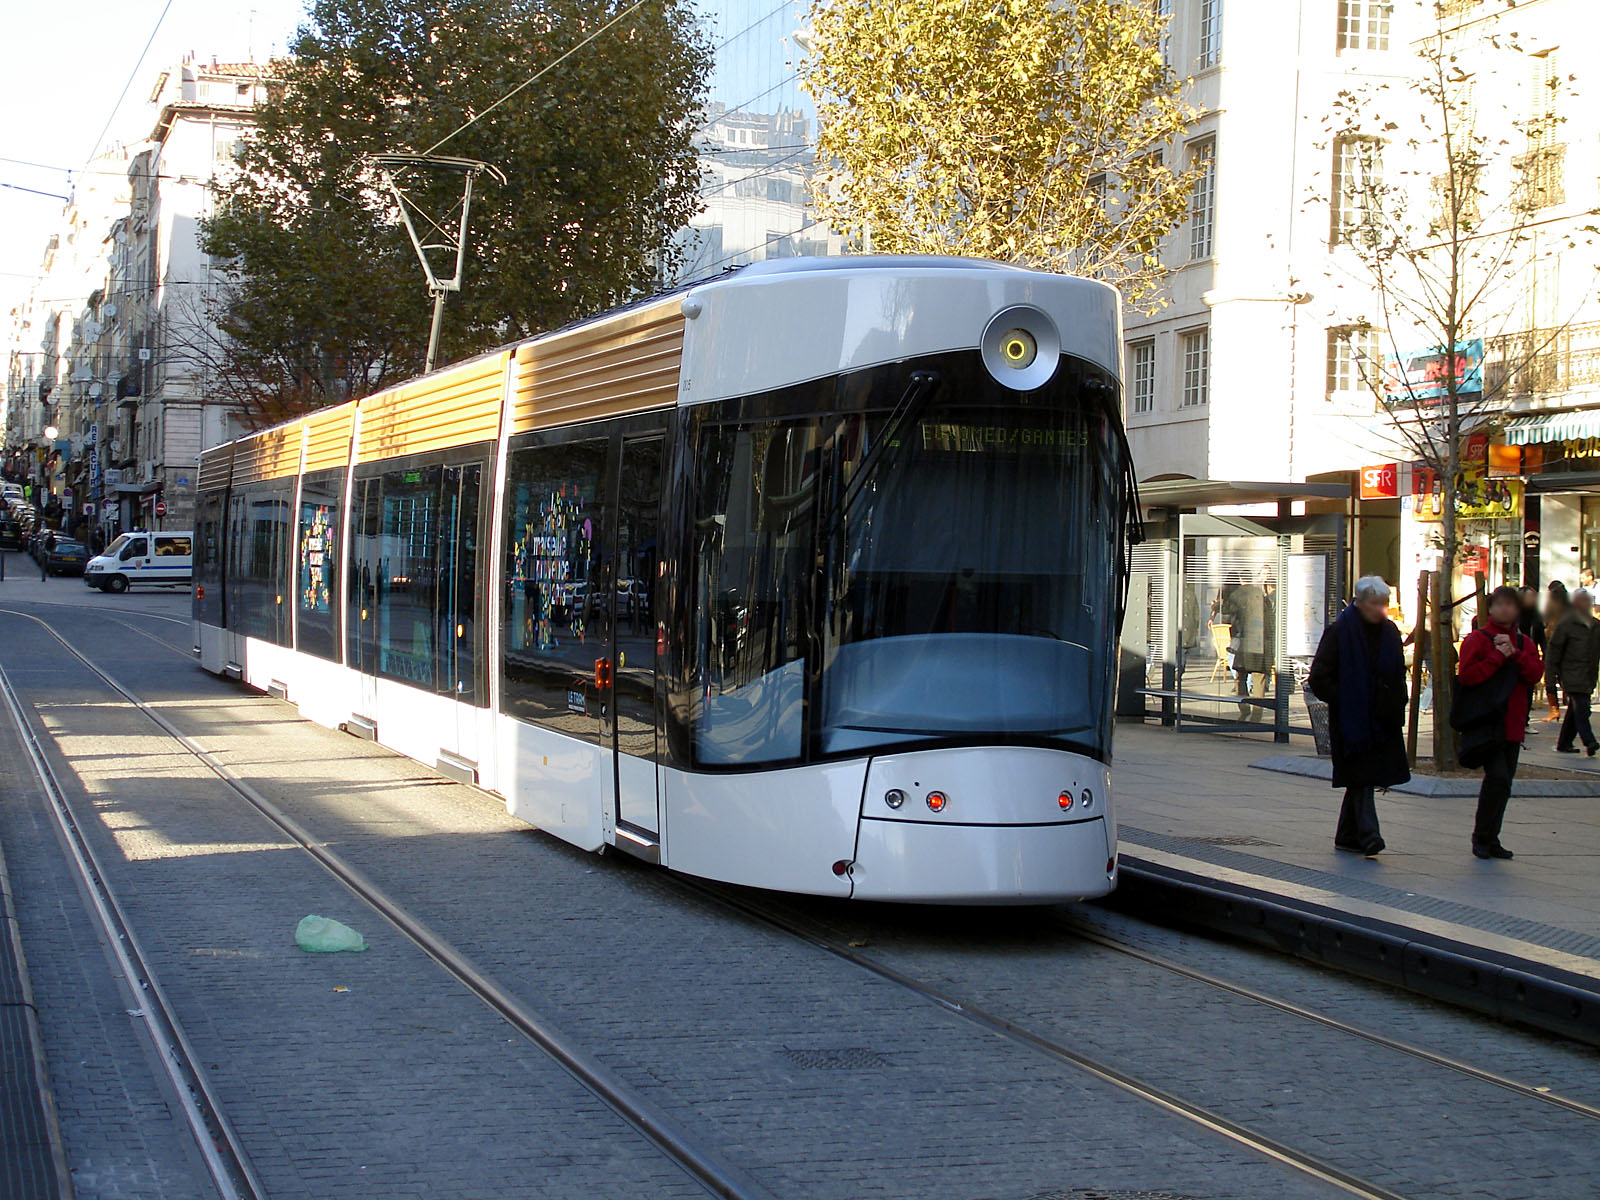 Photo d'illustration de la Mairie de Marseille 6e et 8e arrondissements